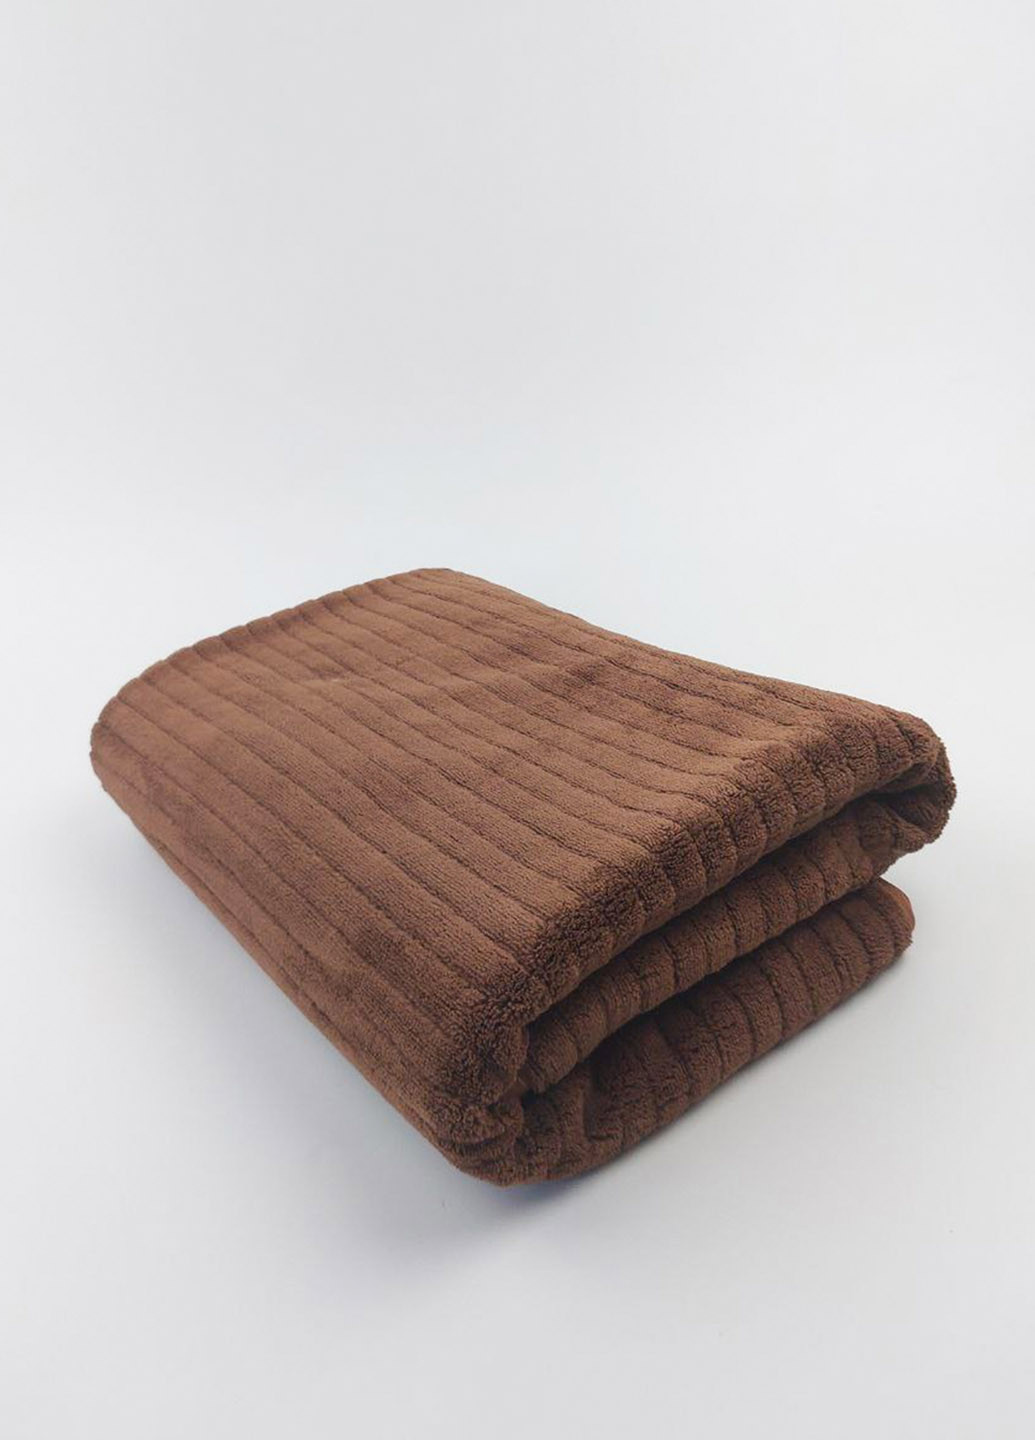 Homedec полотенце банное микрофибра 140х70 см однотонный коричневый производство - Турция